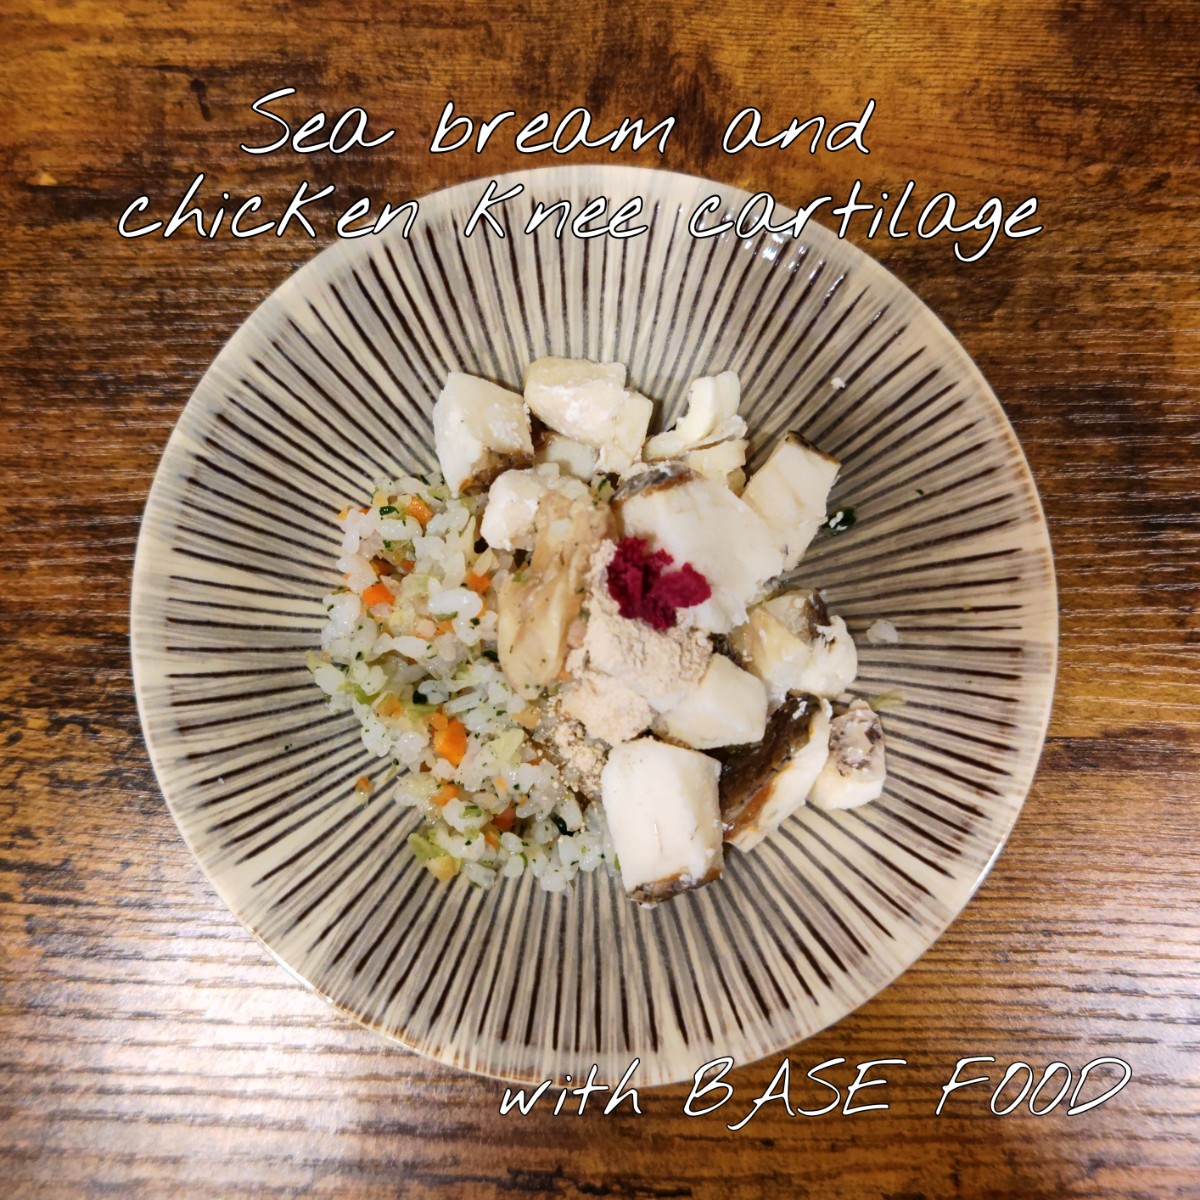 記事 鯛と鶏ひざ軟骨 with BASE FOODのアイキャッチ画像